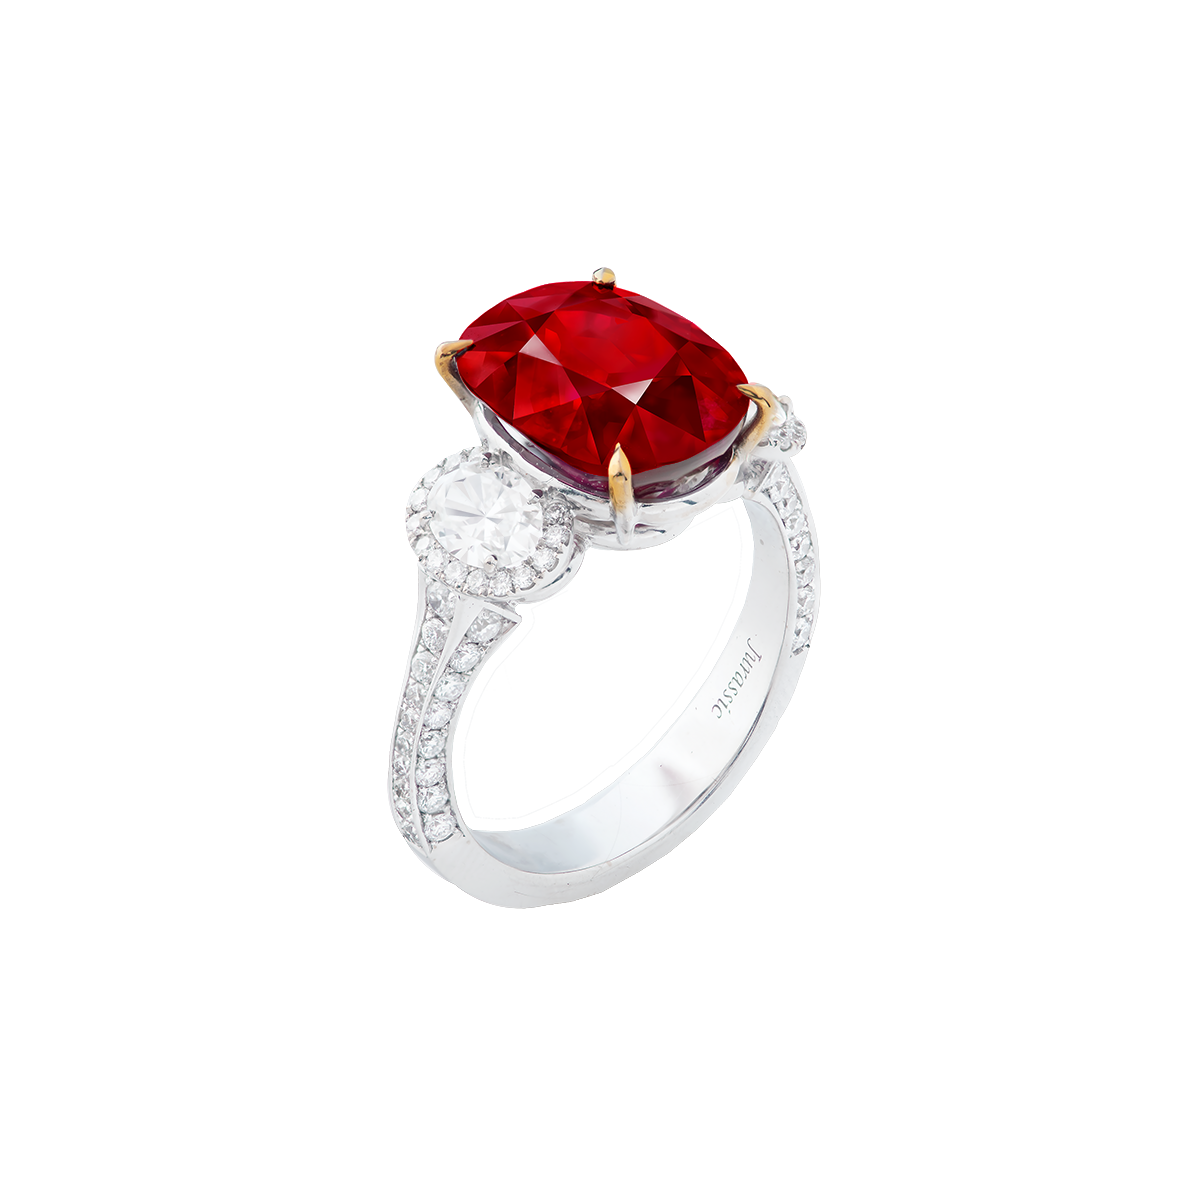 4.85克拉 緬甸天然無燒紅寶鑽戒
Burma Ruby and Diamond Ring